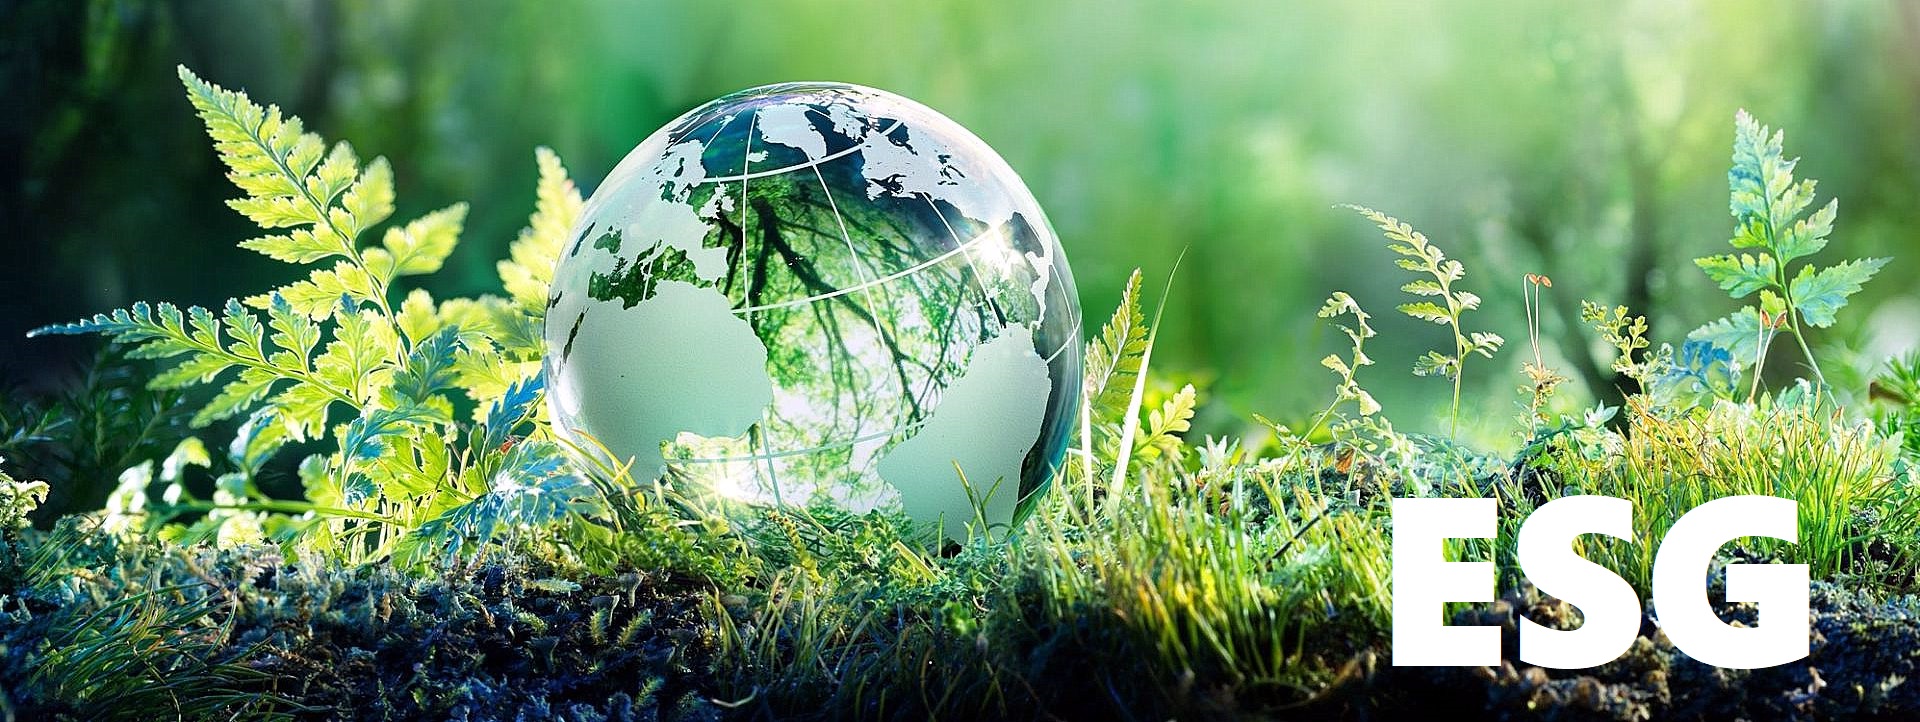 Bilancio di sostenibilità: perché è importante per le Pmi. Domattina un webinar di supporto verso gli obiettivi ESG